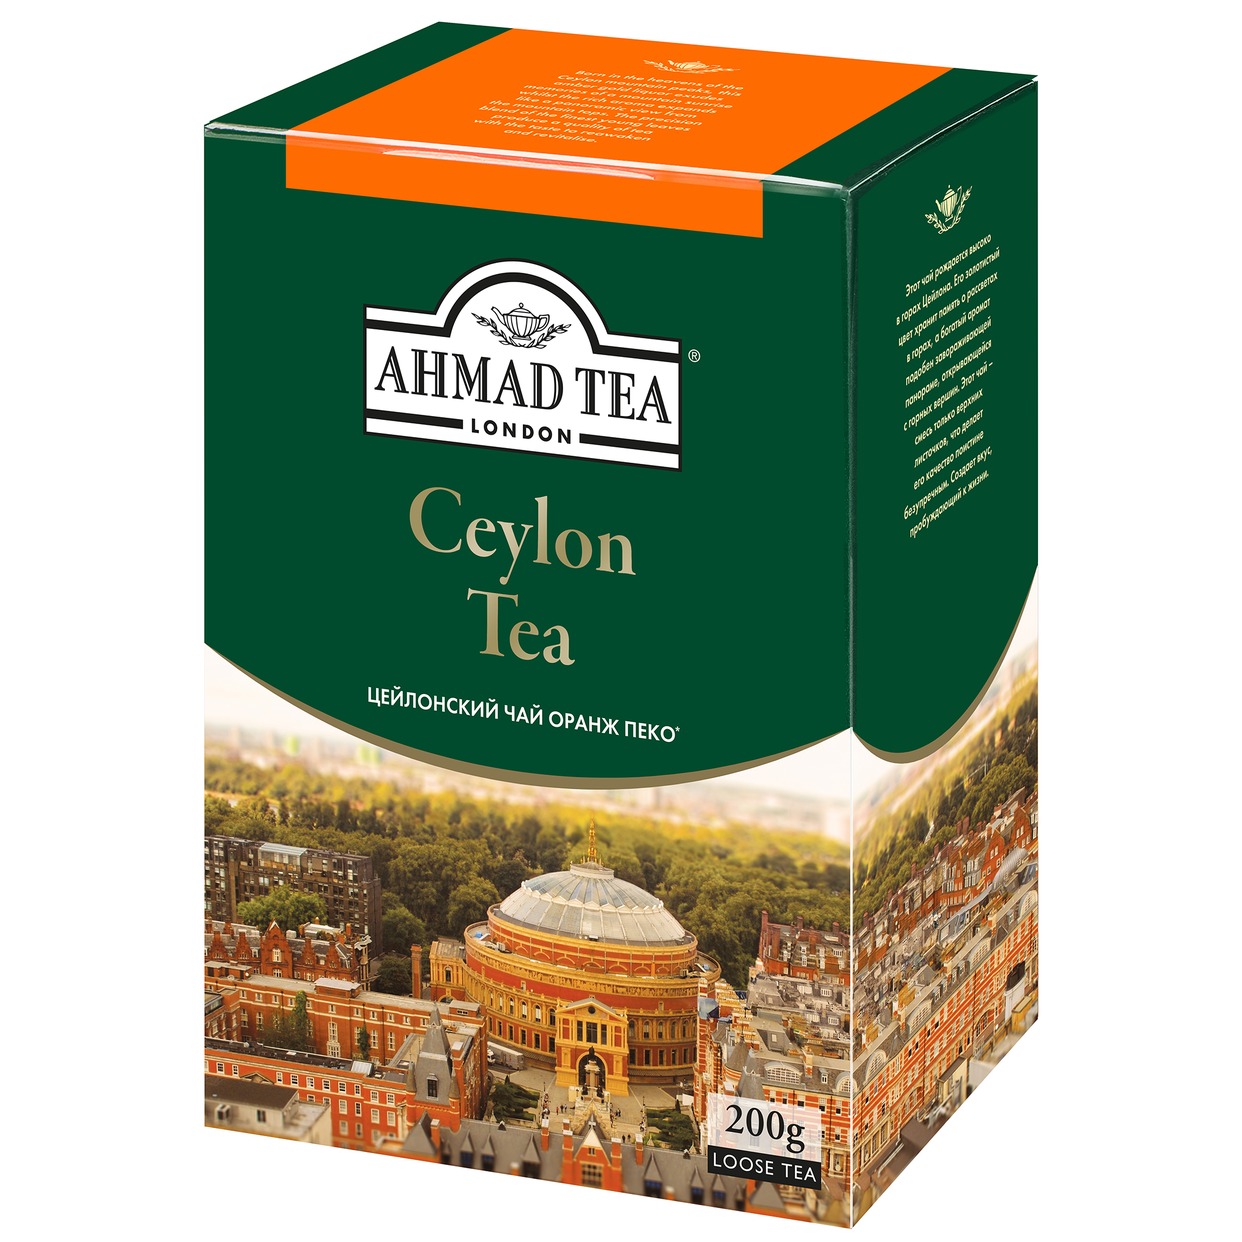 Чай Ahmad Tea Ceylon Orient, черный, 200 г